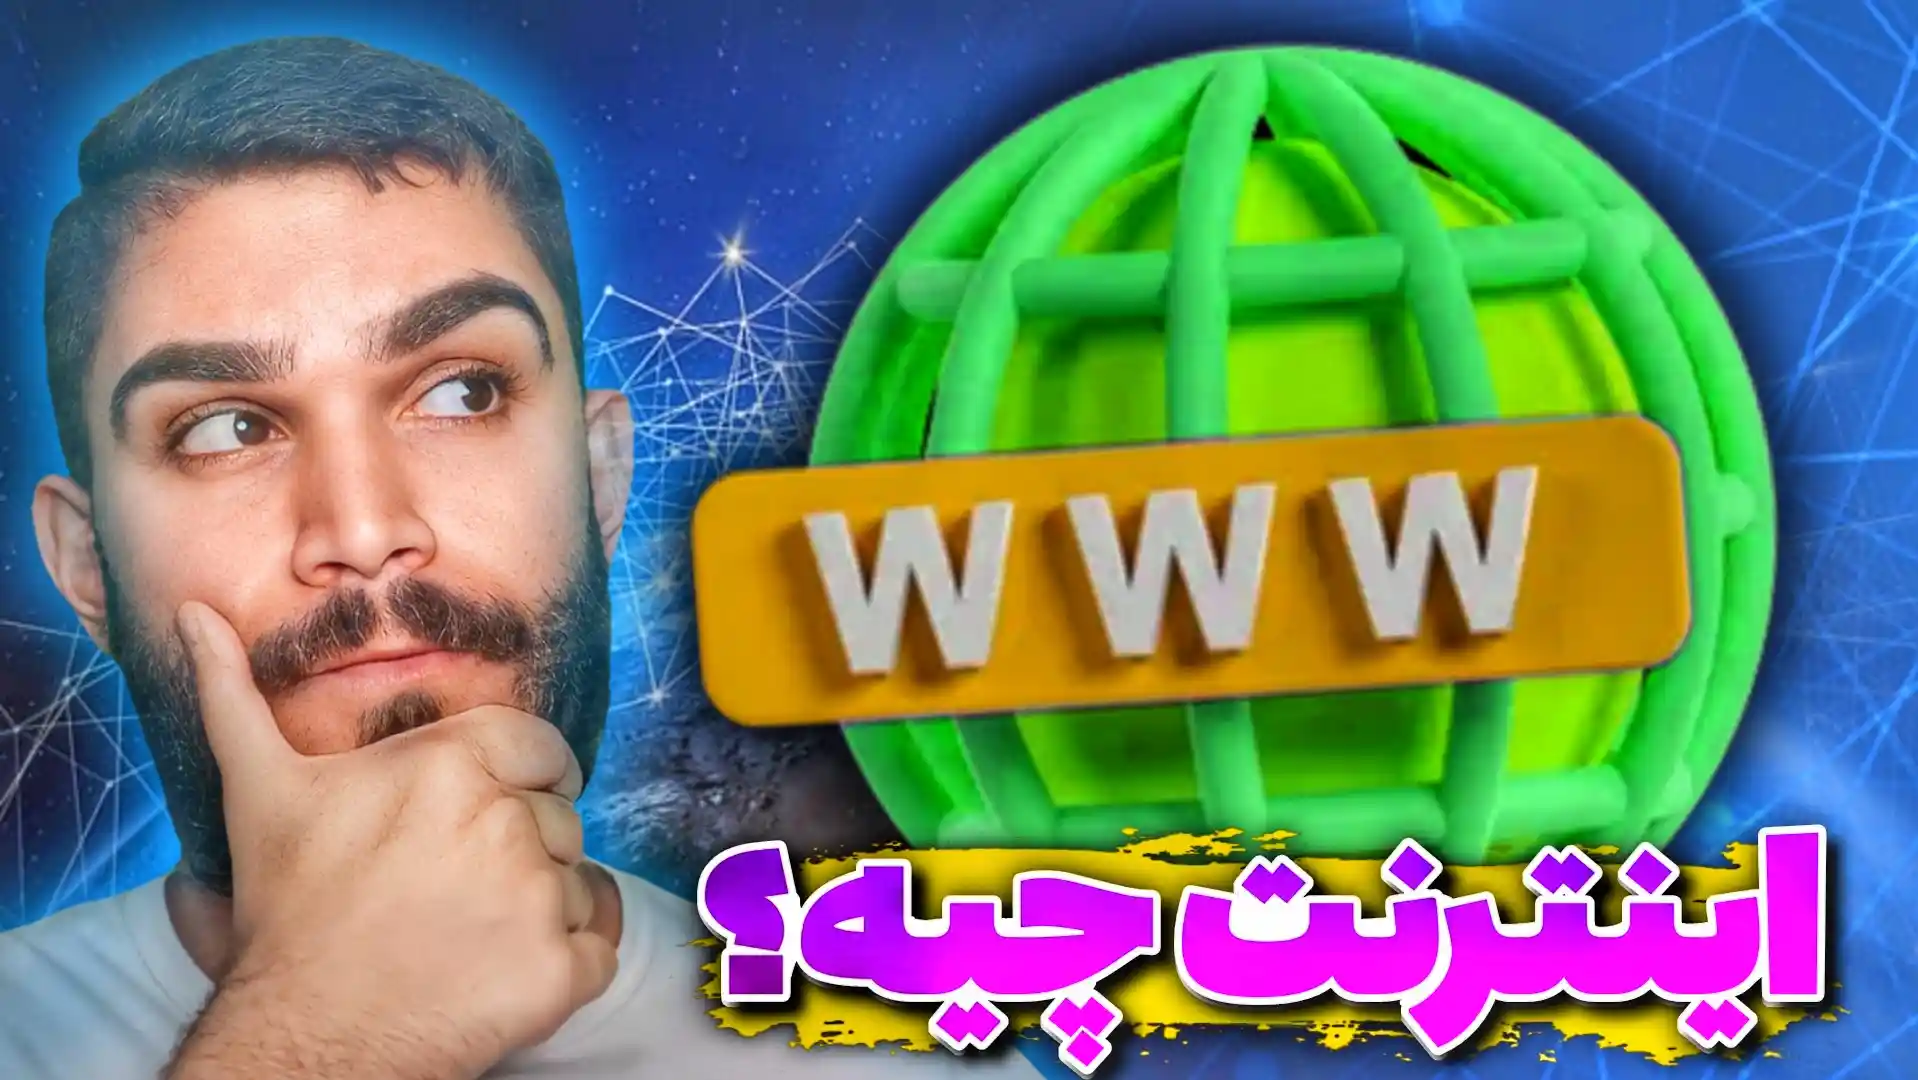 اینترنت چیست ؟ کاربرد اینترنت | تفاوت اینترنت ملی و اینترنت ماهواره ای چیست ؟ سید علی ابراهیمی Seyed Ali Ebrahimi 